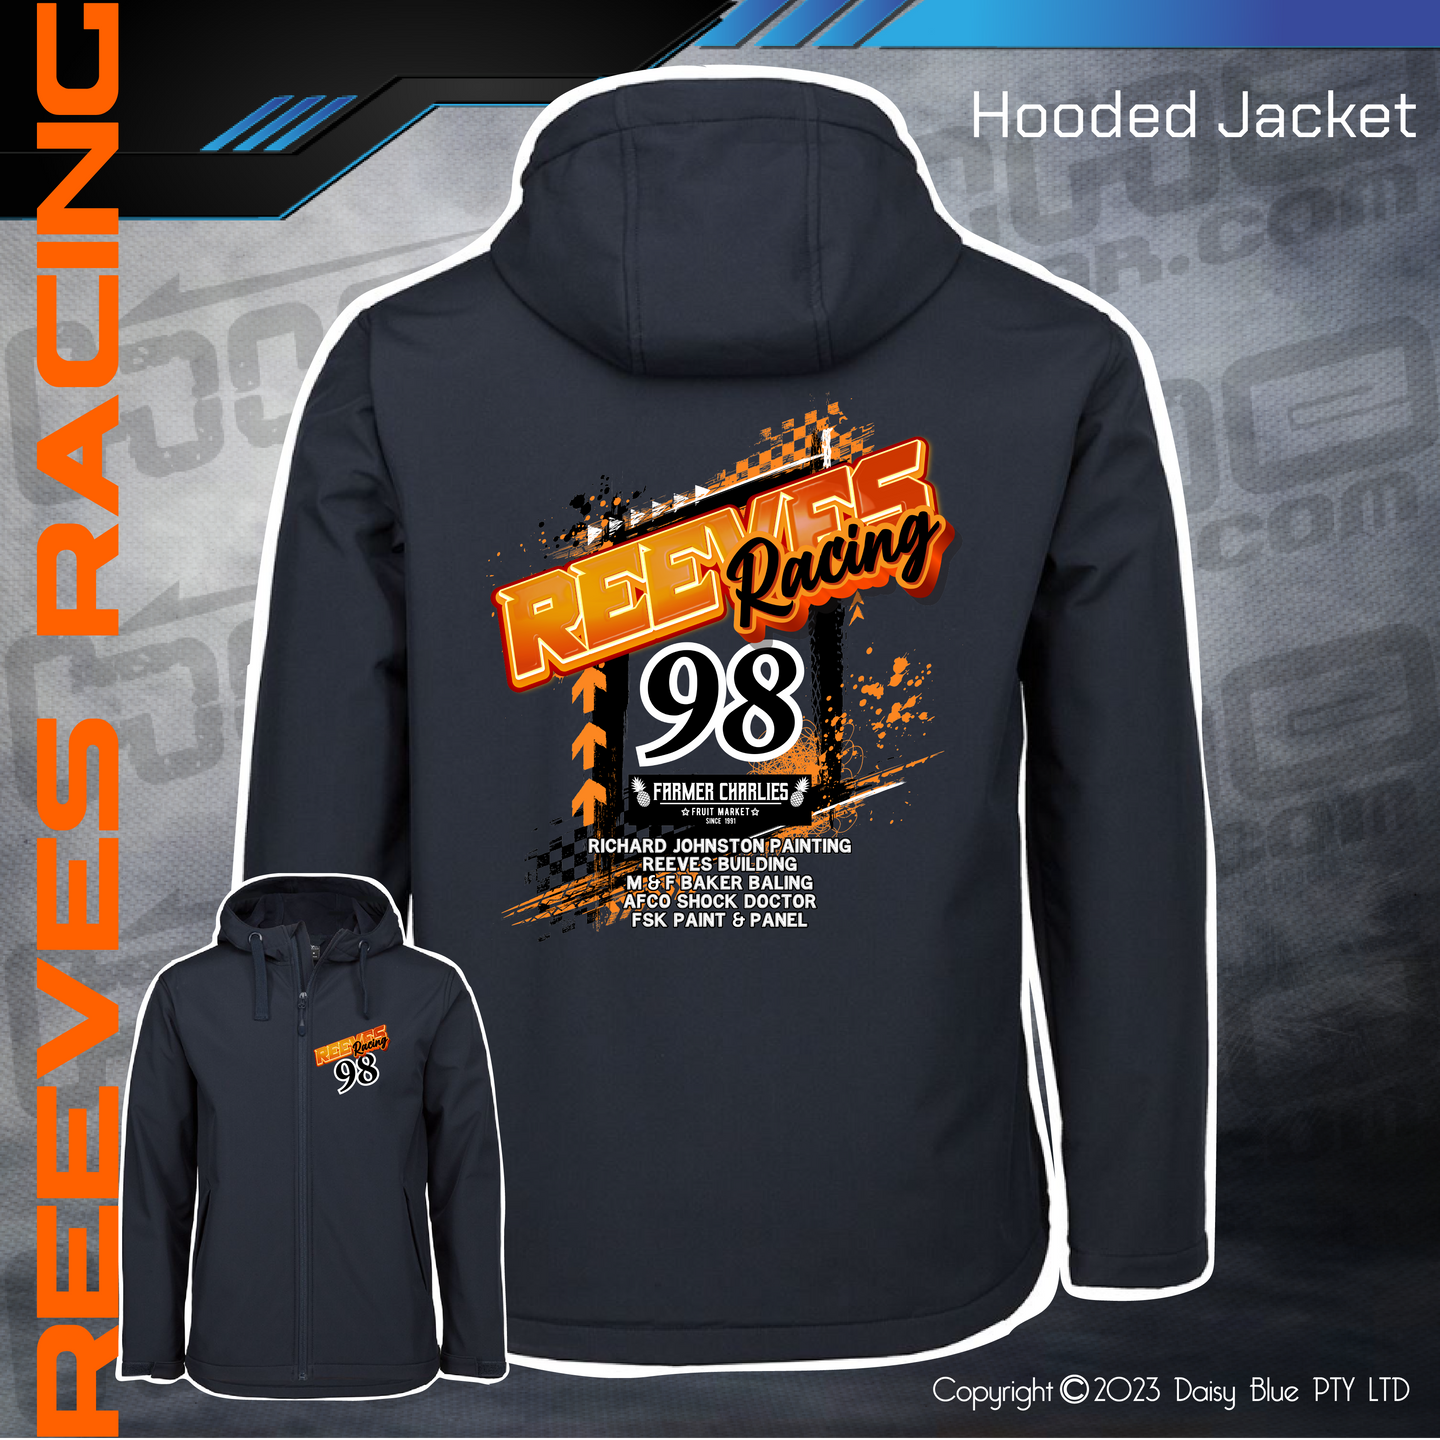 Hooded Jacket - Reeves Racing